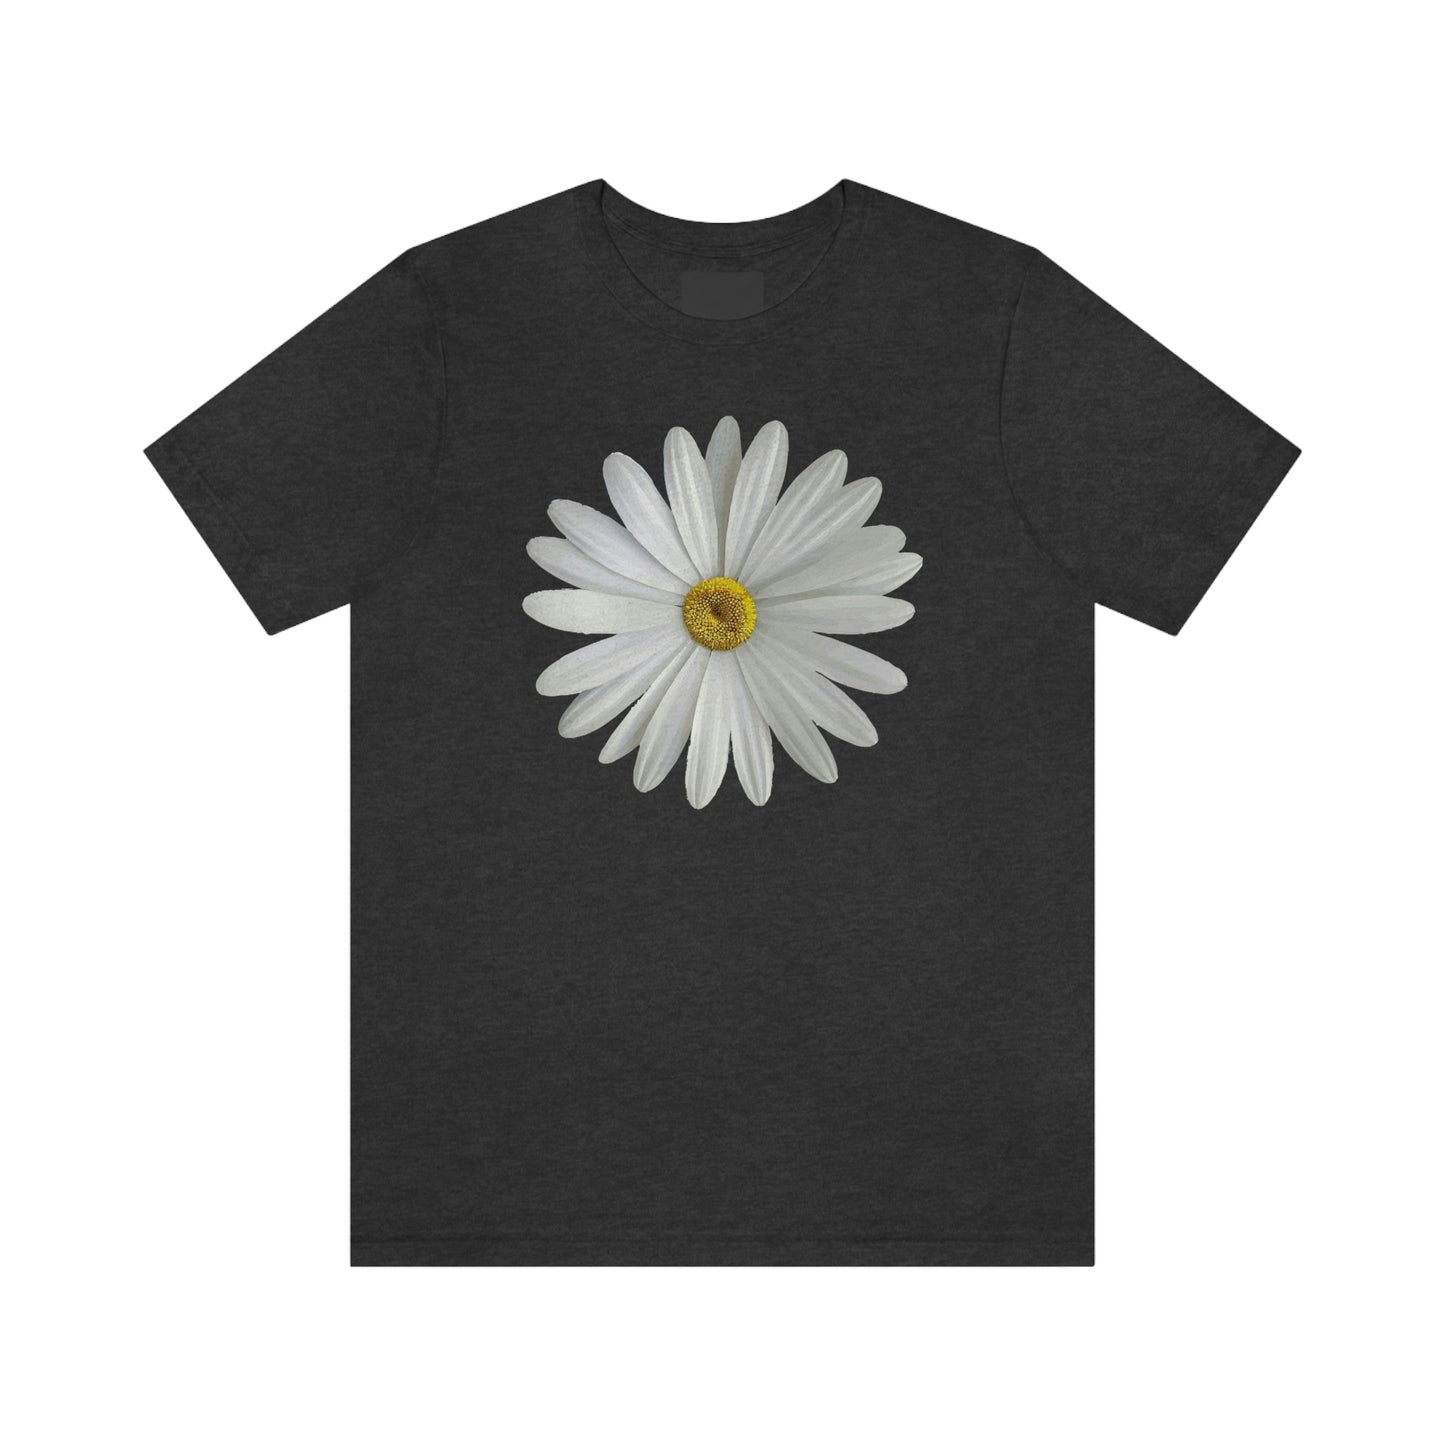 Daisy Shirt Floral Shirt Gift, Wildflower Shirt, Gift For Mom, Daisy Women Shirt Flower Tee Summer Shirt,